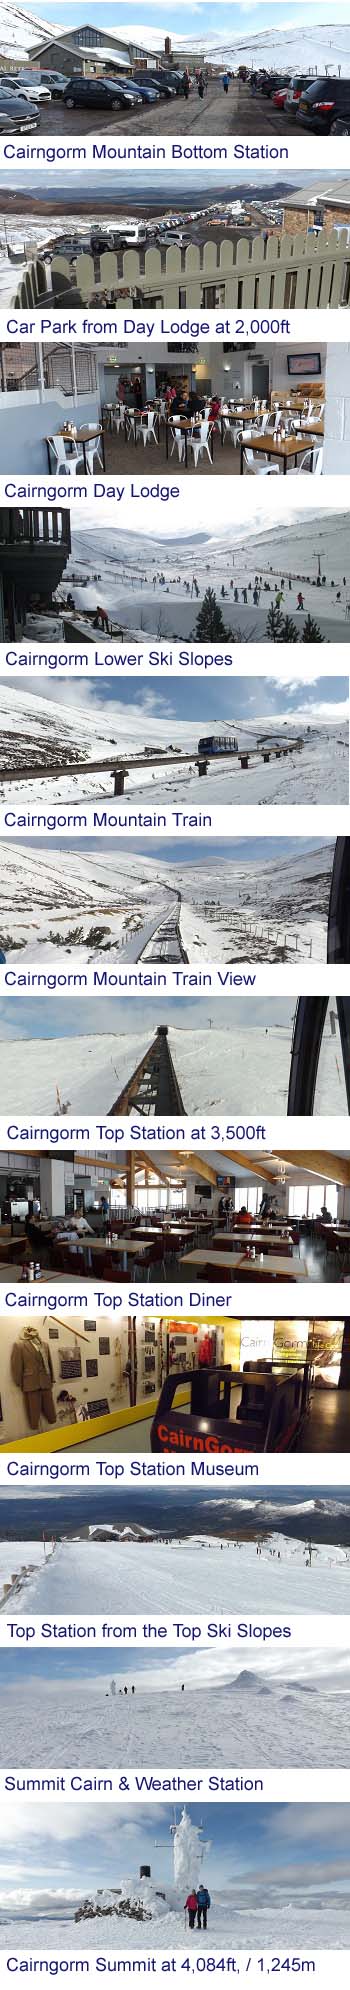 Cairngorm Mountain Photos